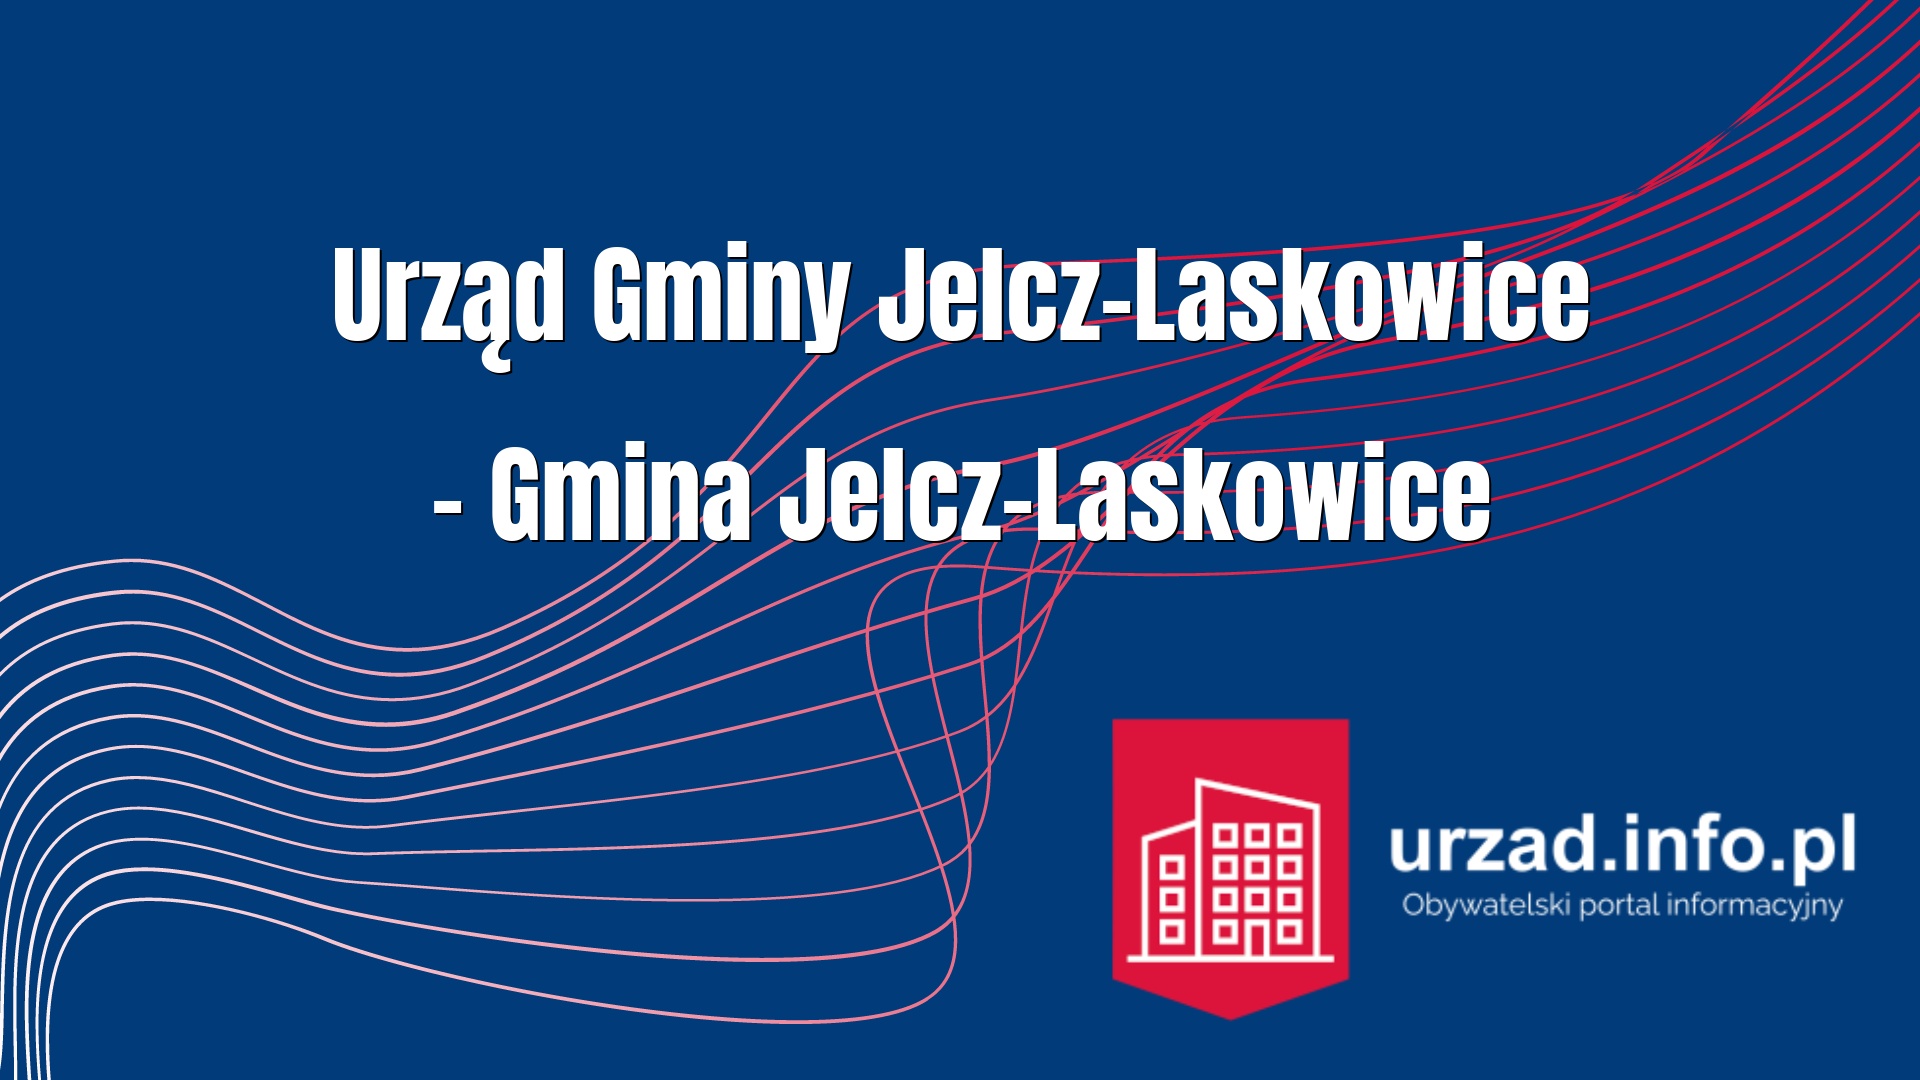 Urząd Gminy Jelcz-Laskowice – Gmina Jelcz-Laskowice